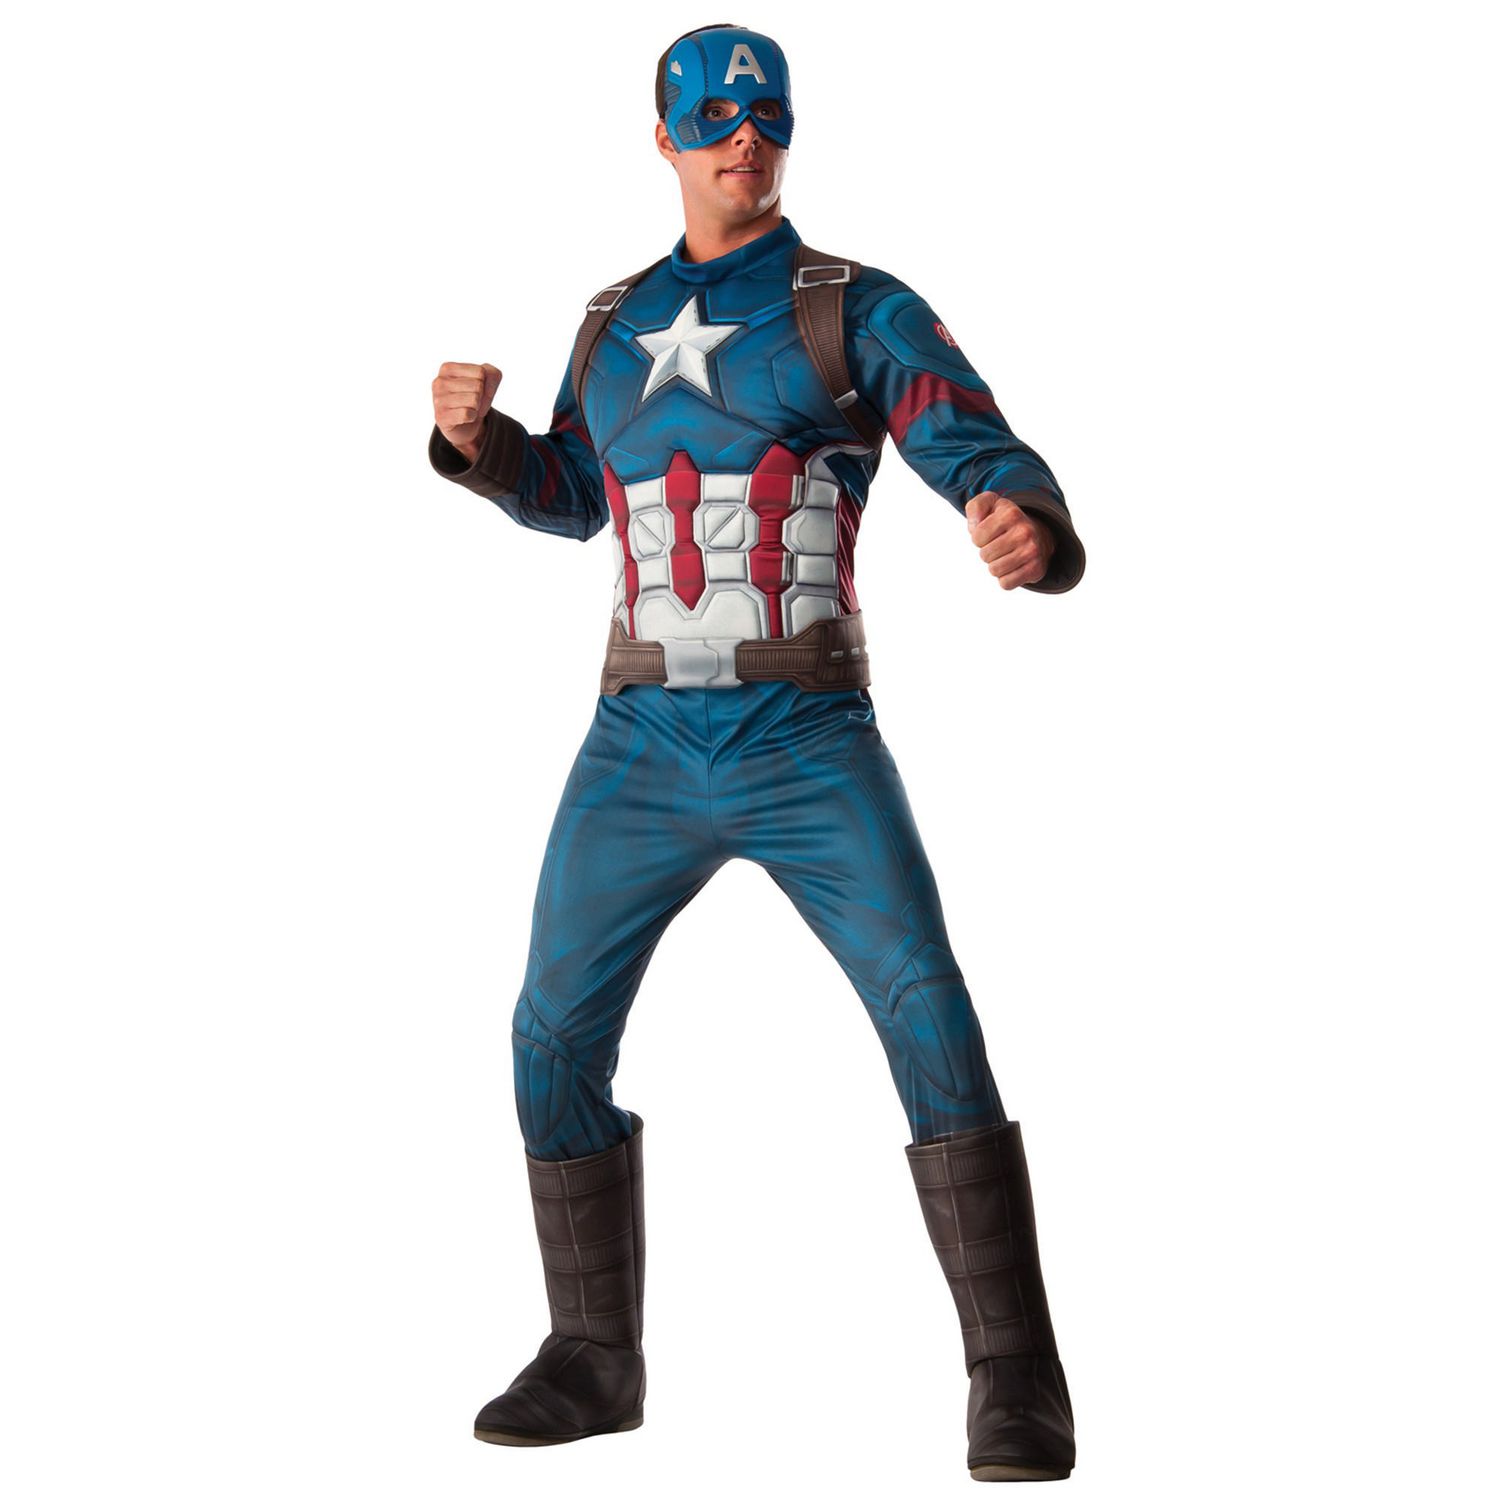 Avengers 4 Deluxe Captain America Costume /& Mask